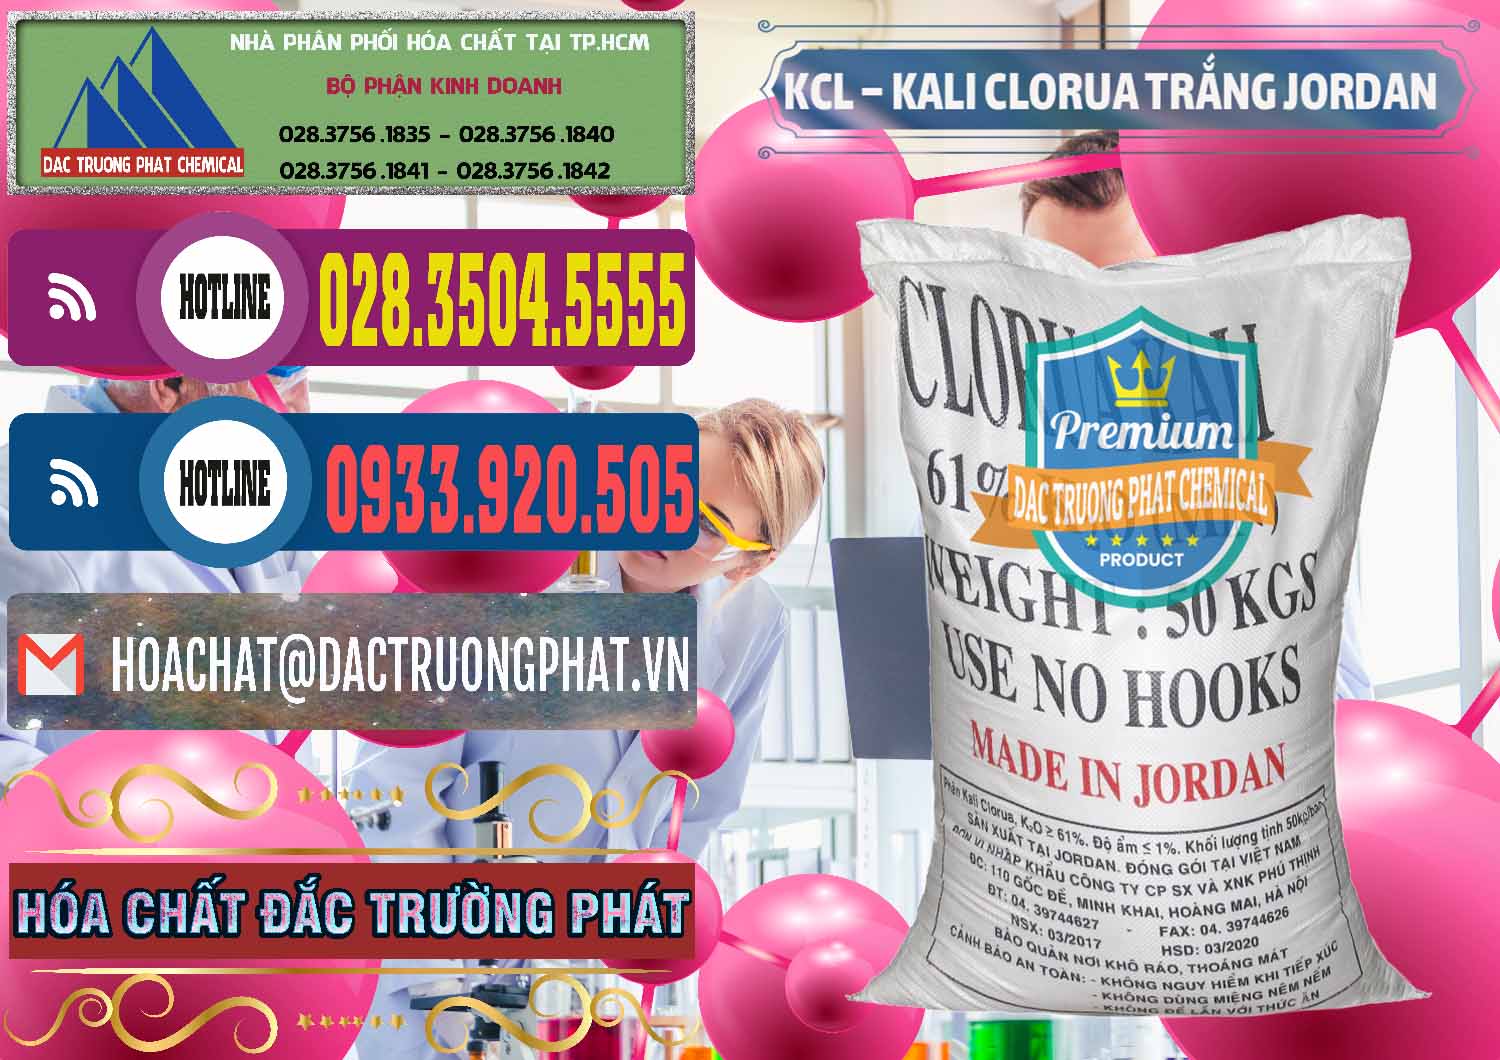 Đơn vị chuyên bán _ phân phối KCL – Kali Clorua Trắng Jordan - 0088 - Nhà phân phối ( bán ) hóa chất tại TP.HCM - muabanhoachat.com.vn